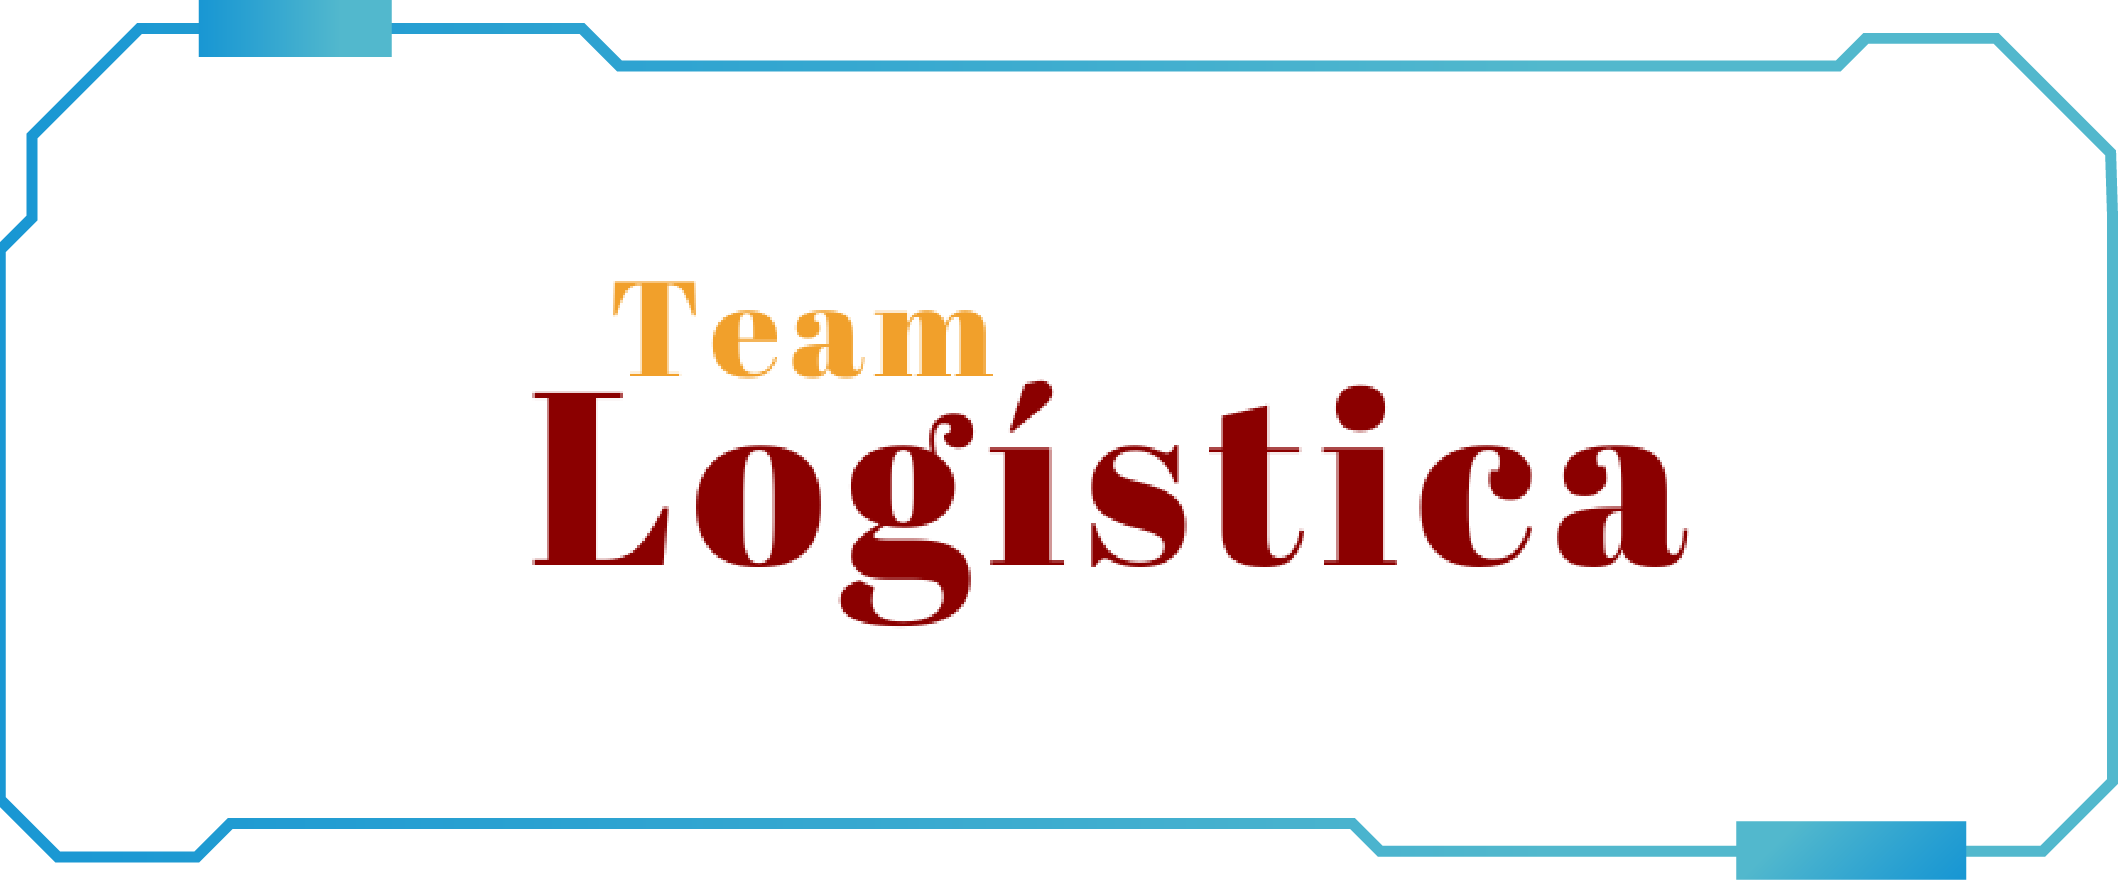 Team Logistica